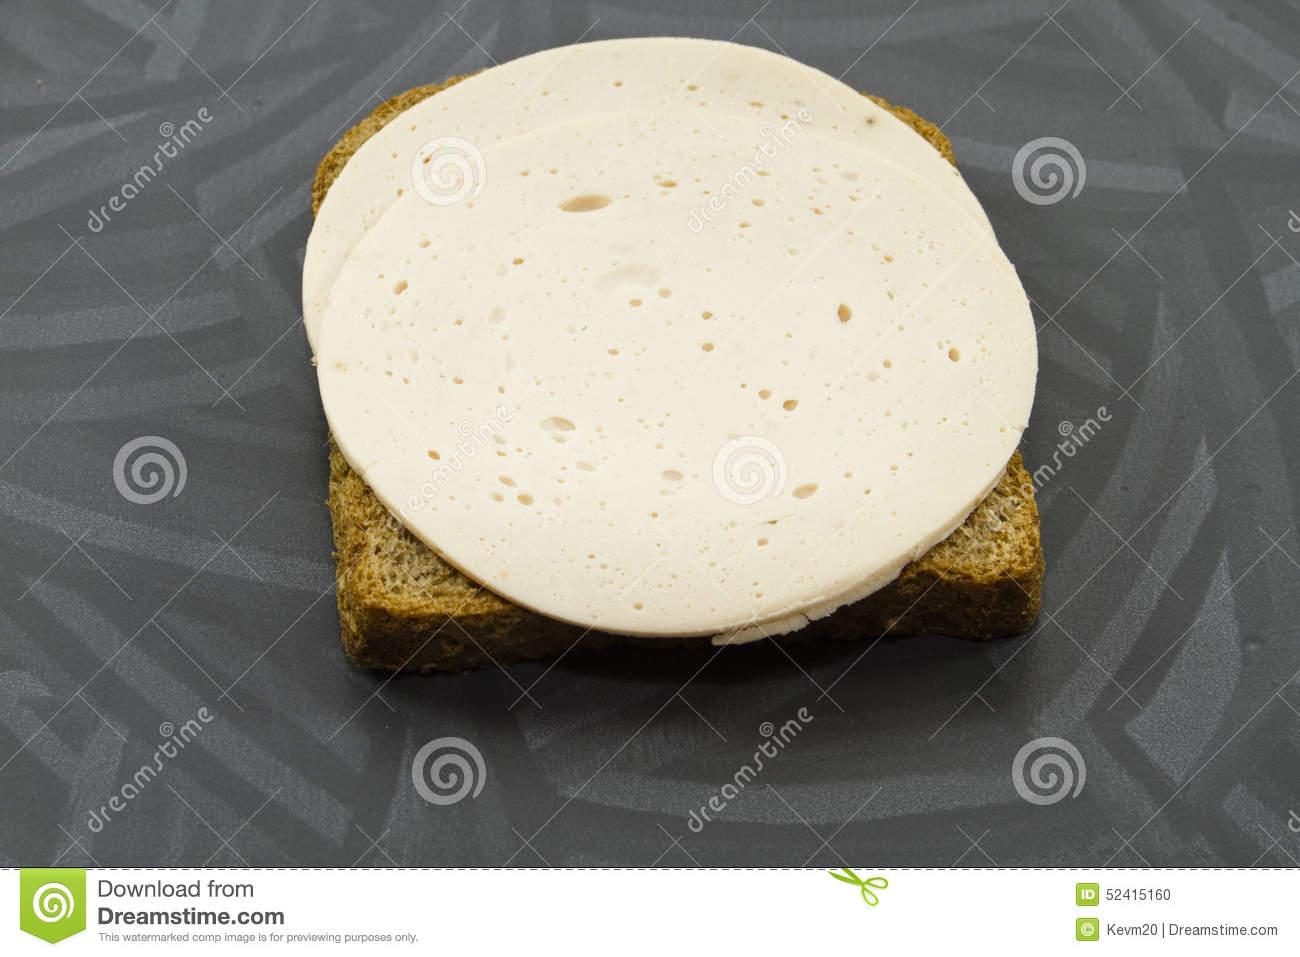 aufschnitt-vom-huhn-mit-toast-brot-52415